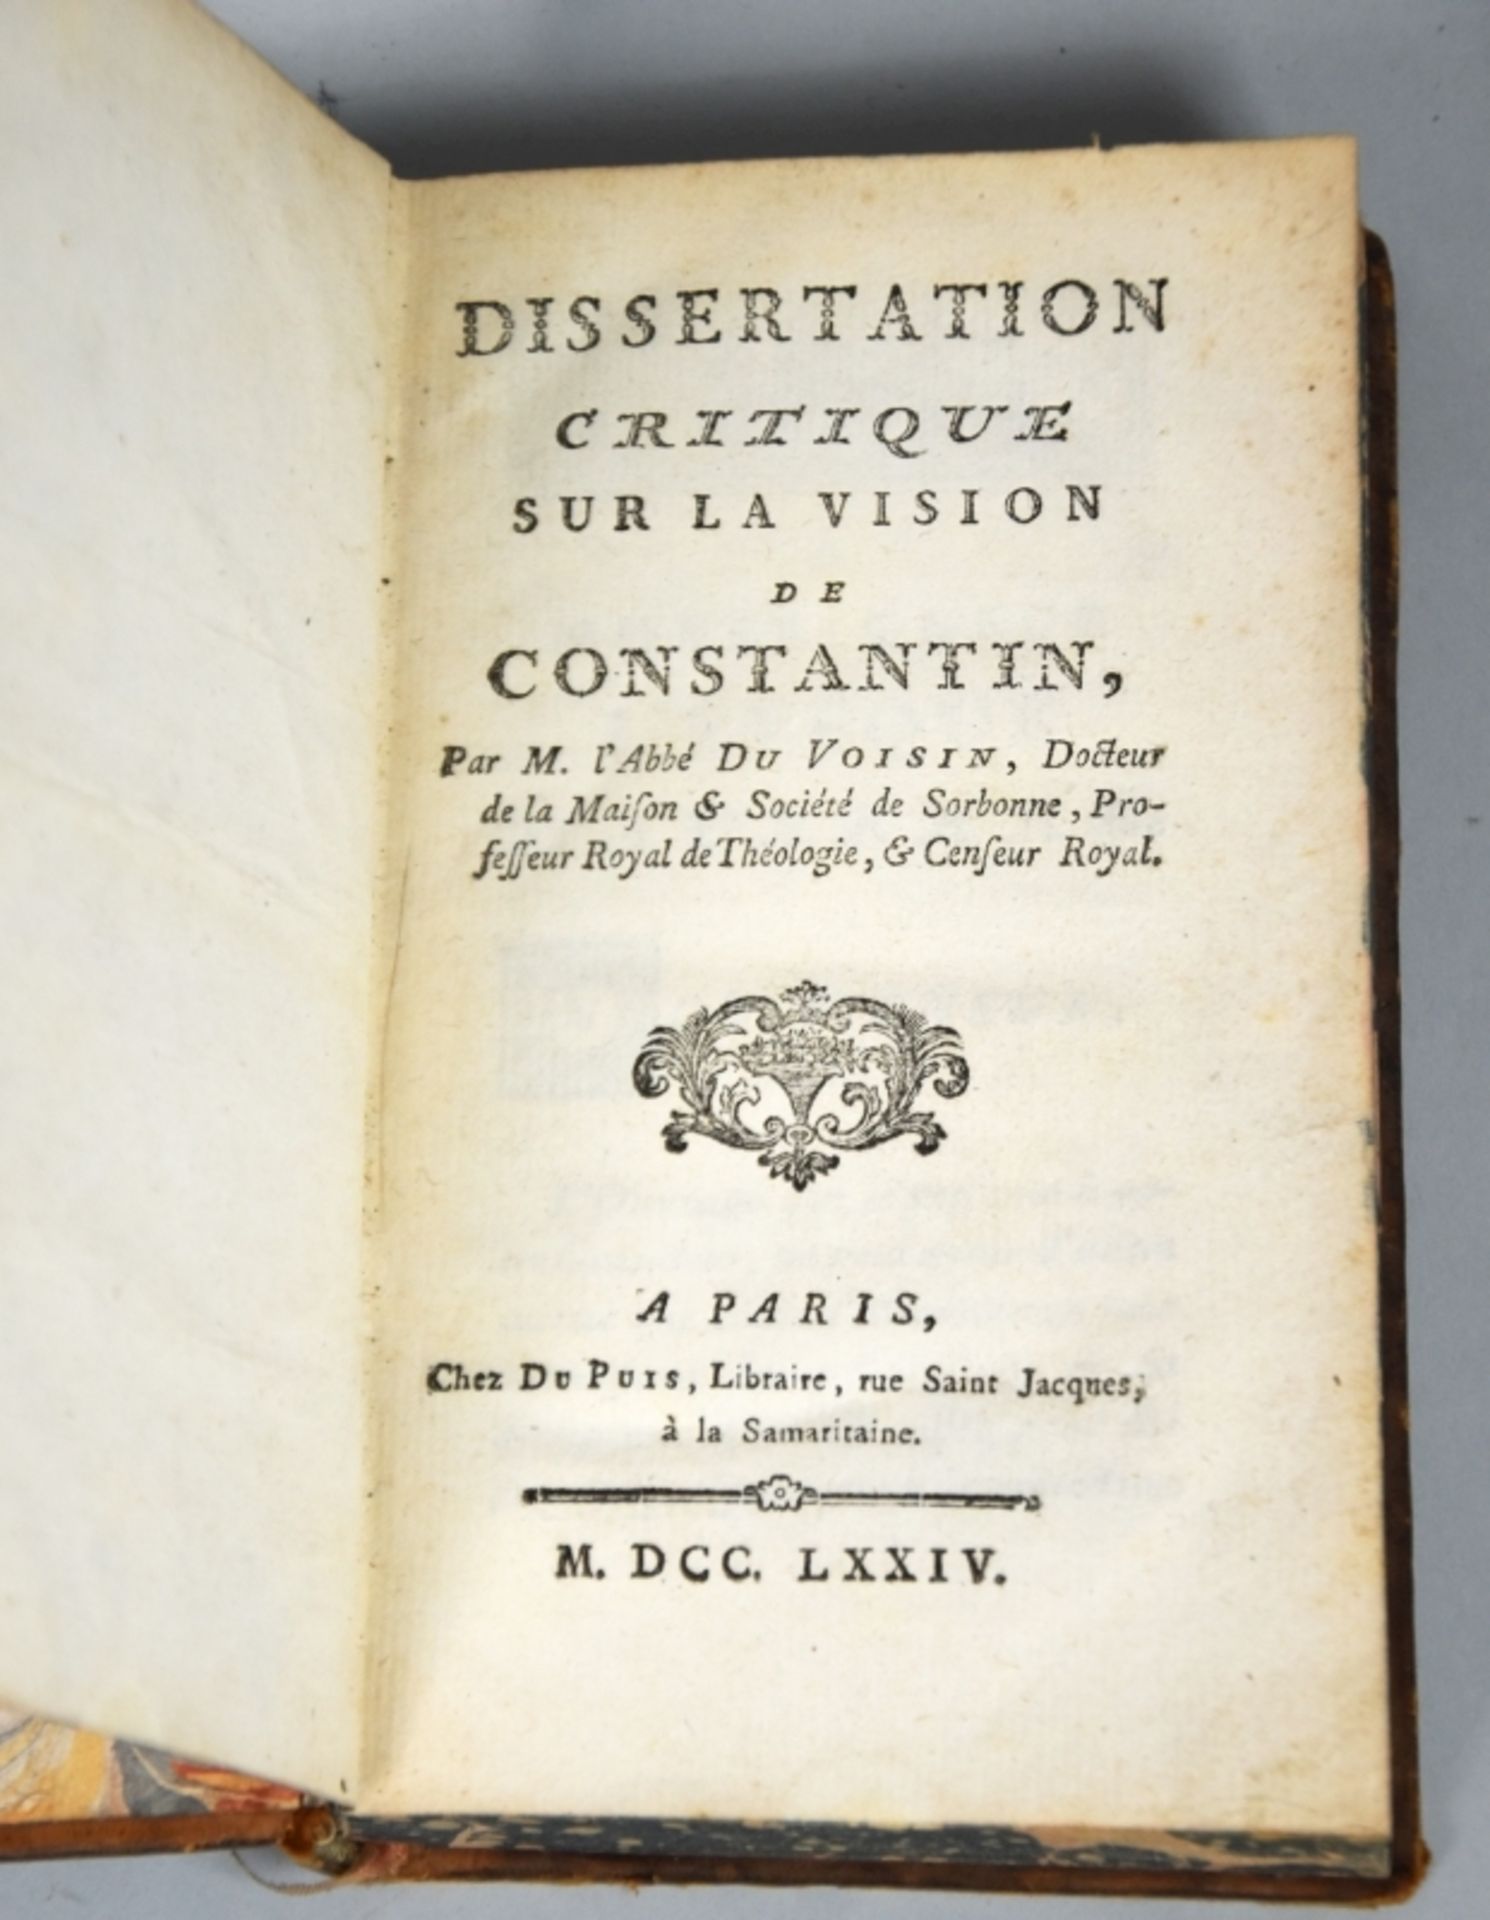 DU VOISIN "Dissertation critique sur la vision de Constantin" - Image 2 of 3